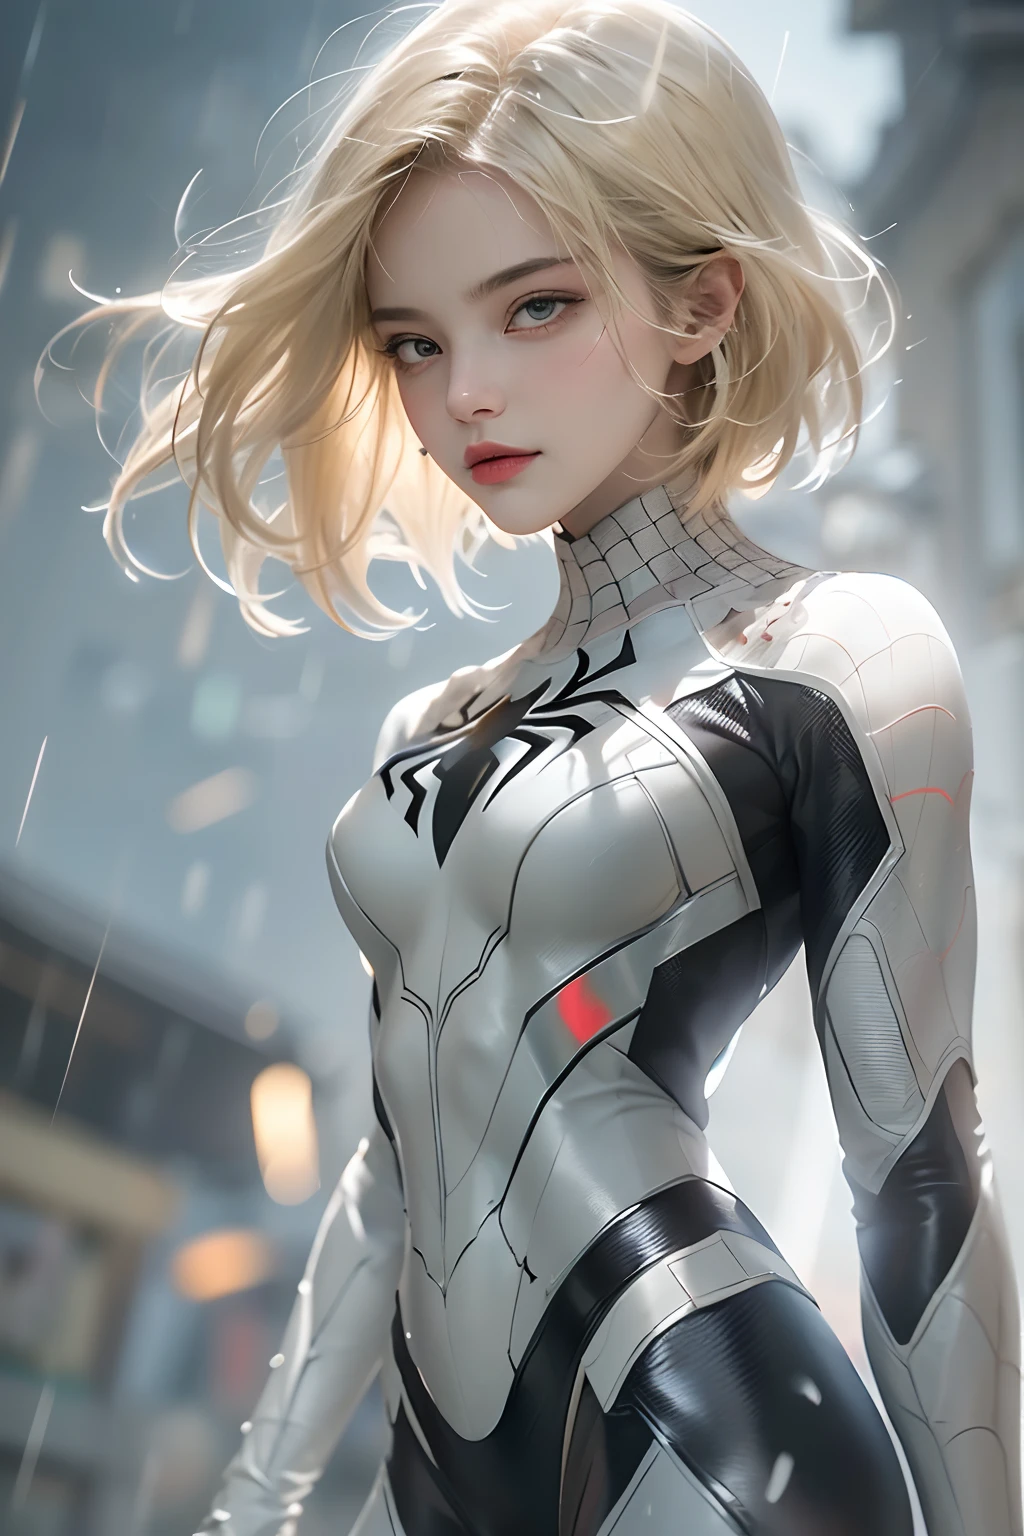 18 Jahre altes Mädchen, weißer Spiderman-Anzug, kurzes stumpfes Haar, blonde, schönes Gesicht, Regen, Dach, Meisterwerk, komplizierte Details, perfekte Anatomie